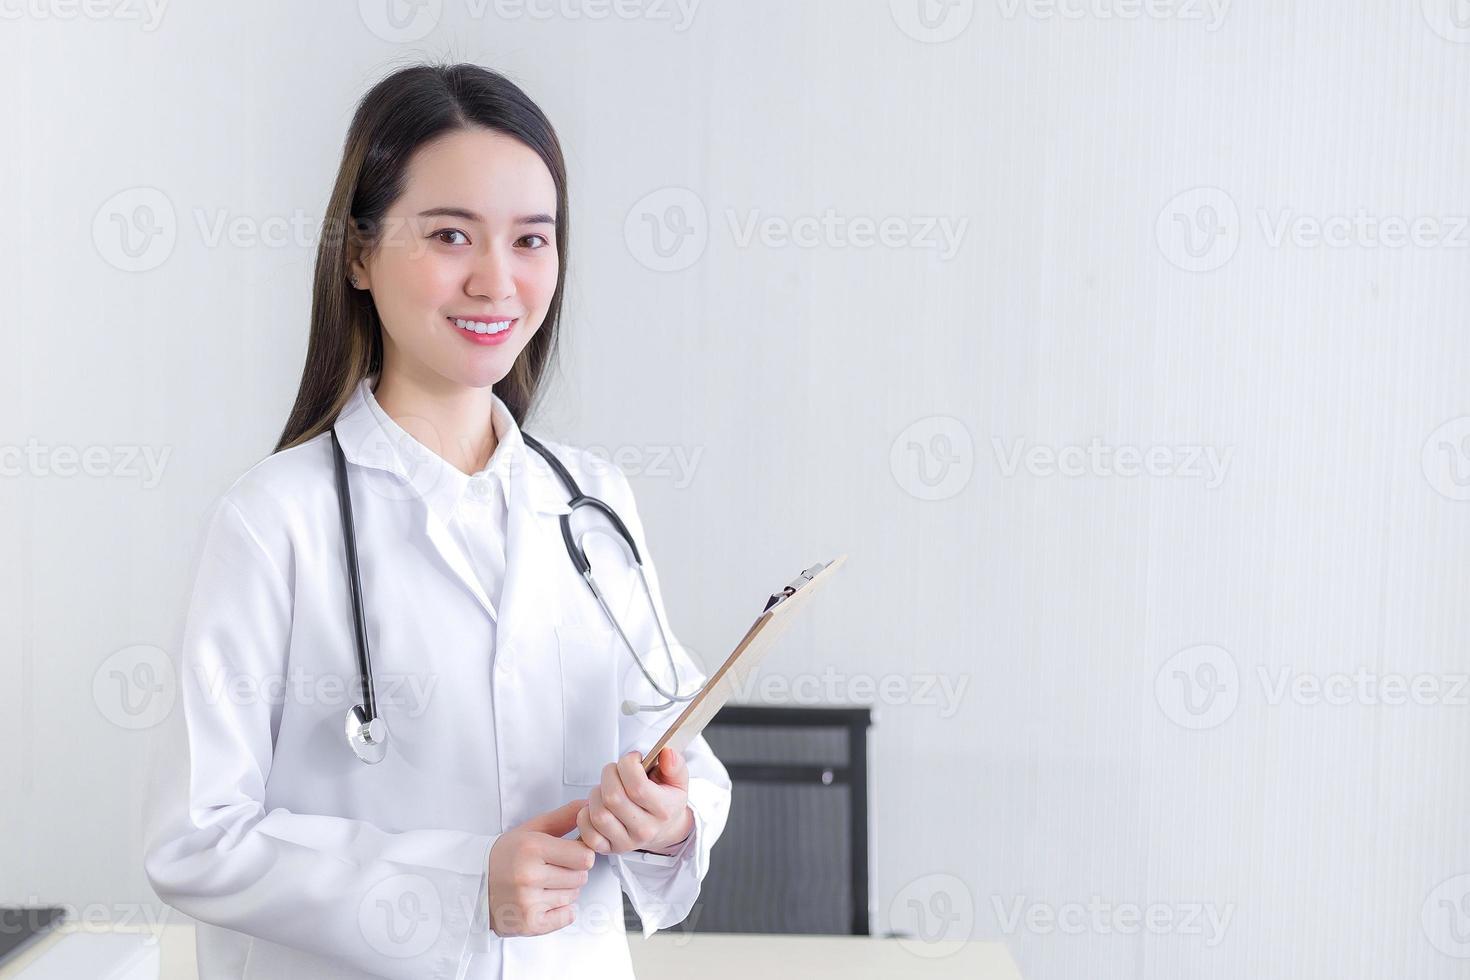 Professionelle schöne junge Ärztin, die ein Dokument in der Zwischenablage hält und lächelnd in die Kamera schaut, während sie im Krankenhaus einen weißen Laborkittel und ein Stethoskop trägt. Gesundheitskonzept. foto